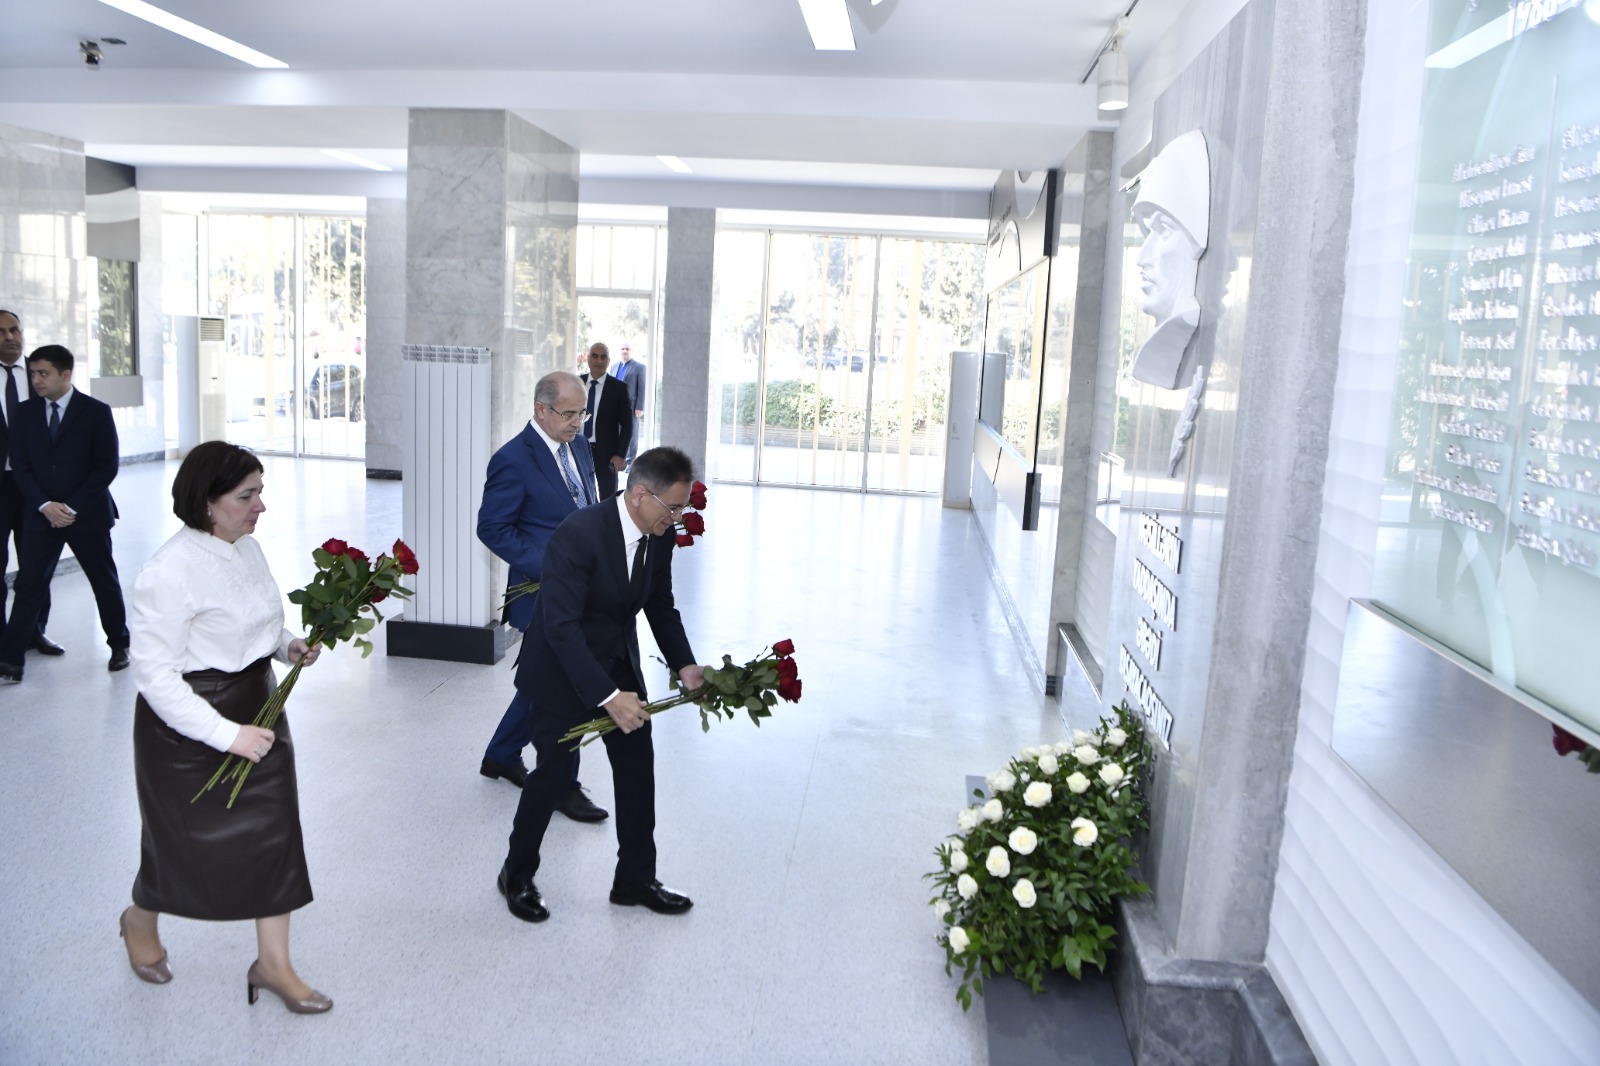 AVF prezidenti Mədət Quliyev “Tarixin dərsləri” layihəsinin ilk qonağı olub